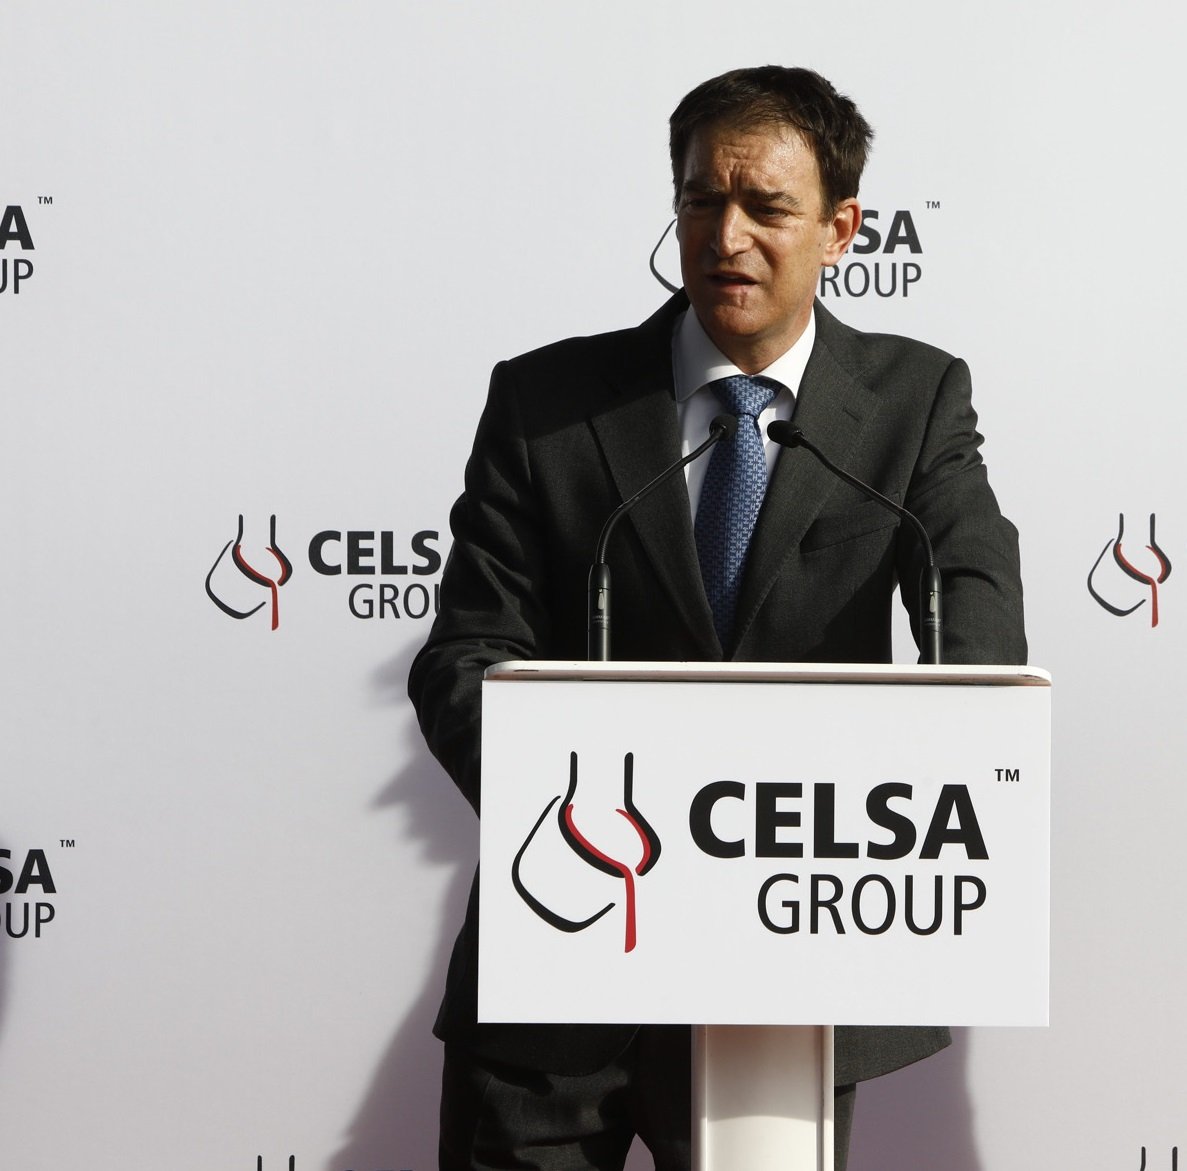 Els Rubiralta van a concurs de creditors amb 540 milions de deute després de perdre Celsa